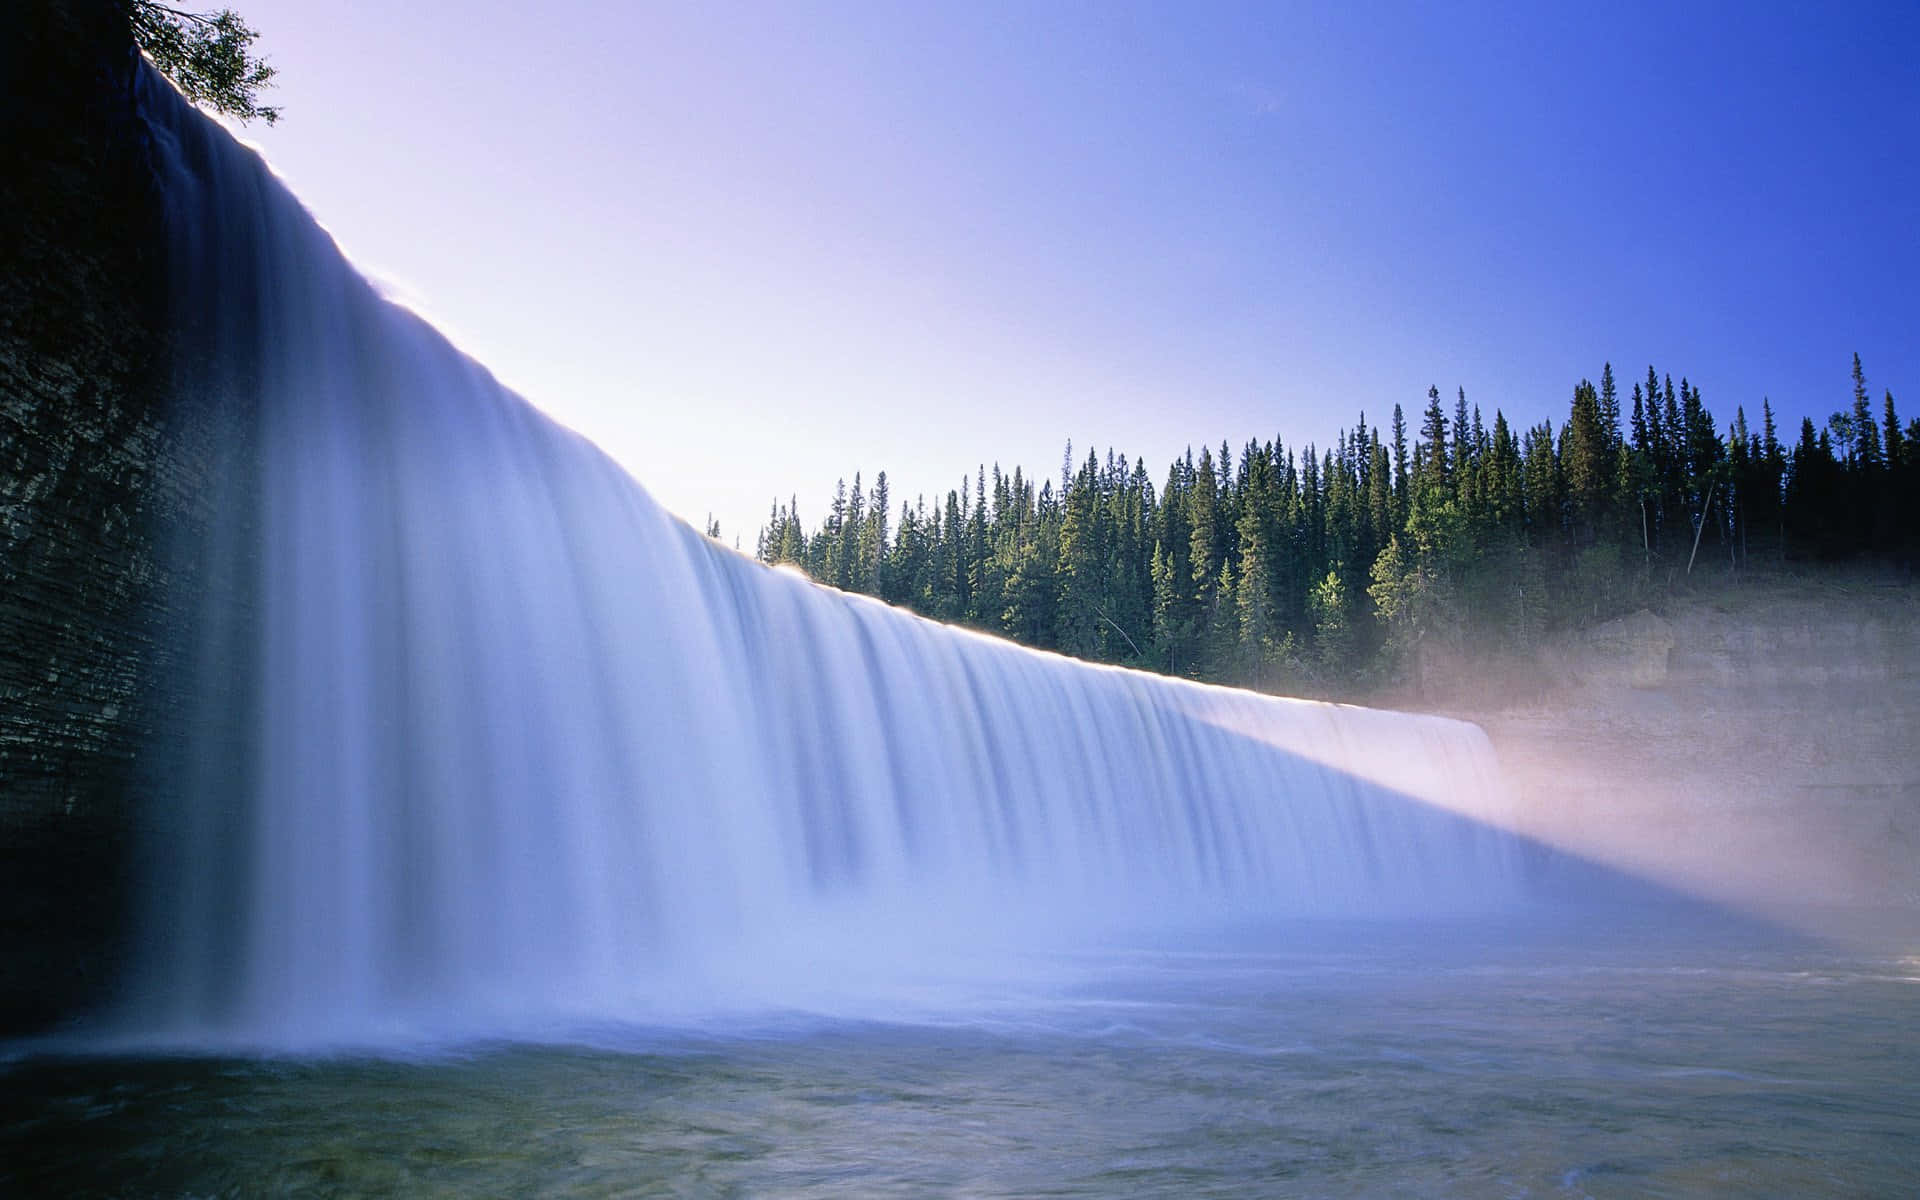 "Witness the mesmerizing majesty of a stunning Waterfall."